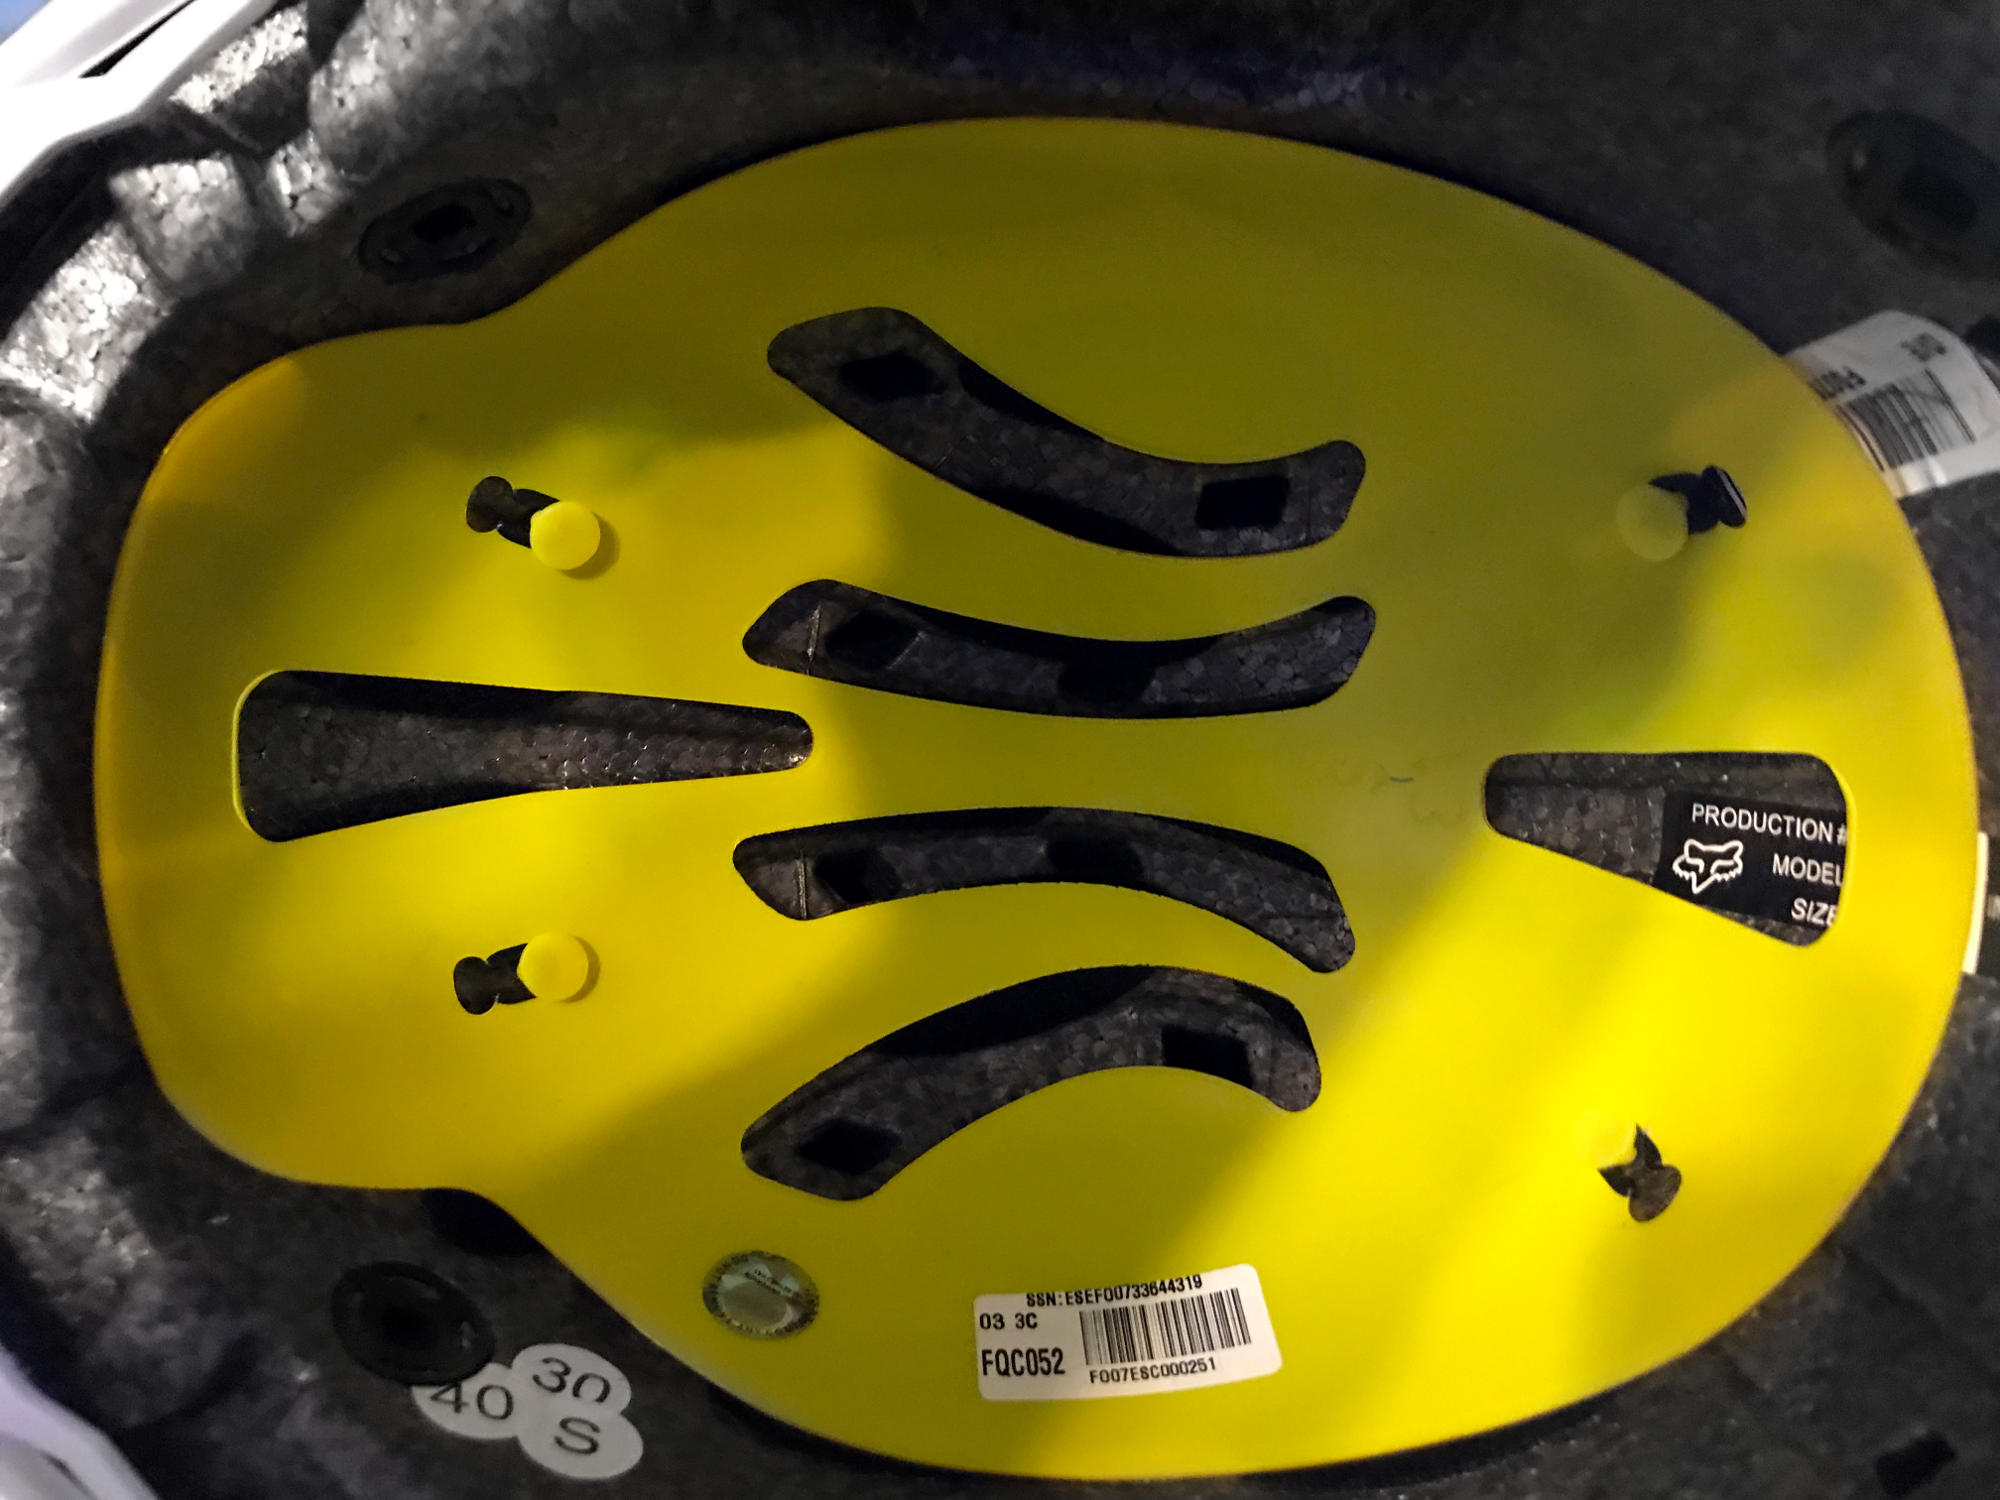 El casco amarillo del Sistema MIPS, a